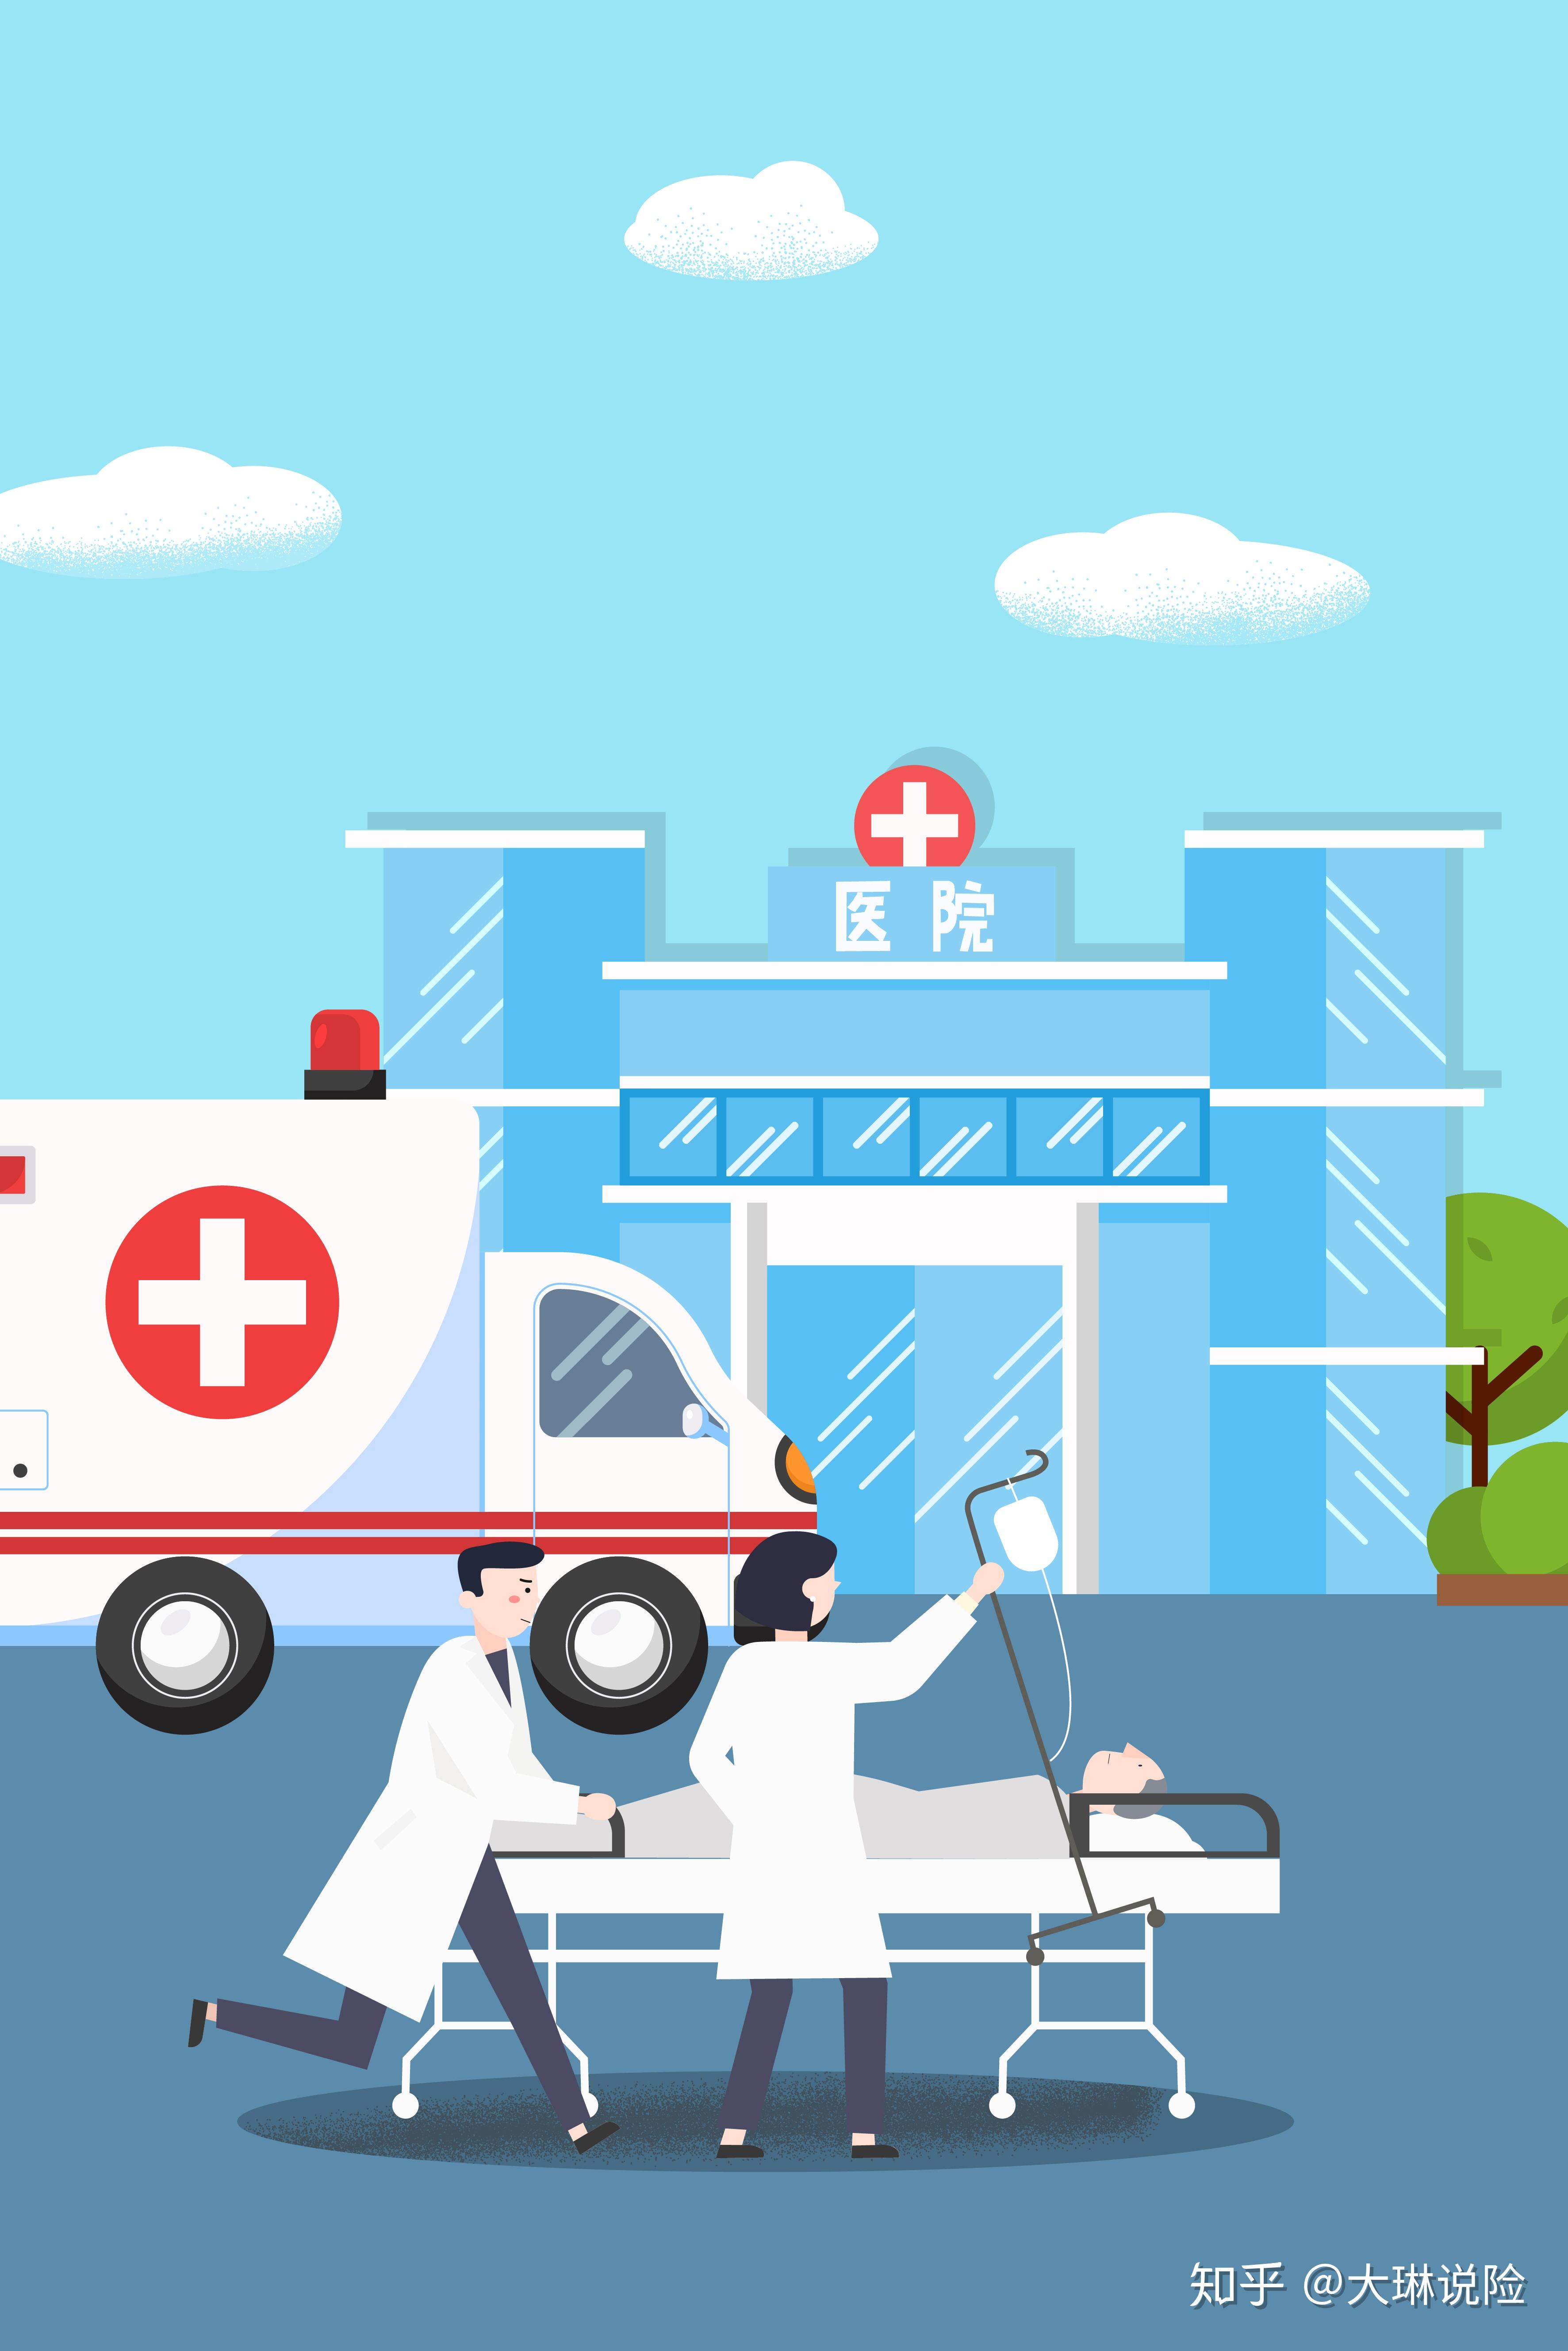 以砀山为例,需要在乡镇指定的医院办理转诊,比如砀城镇是在县医院